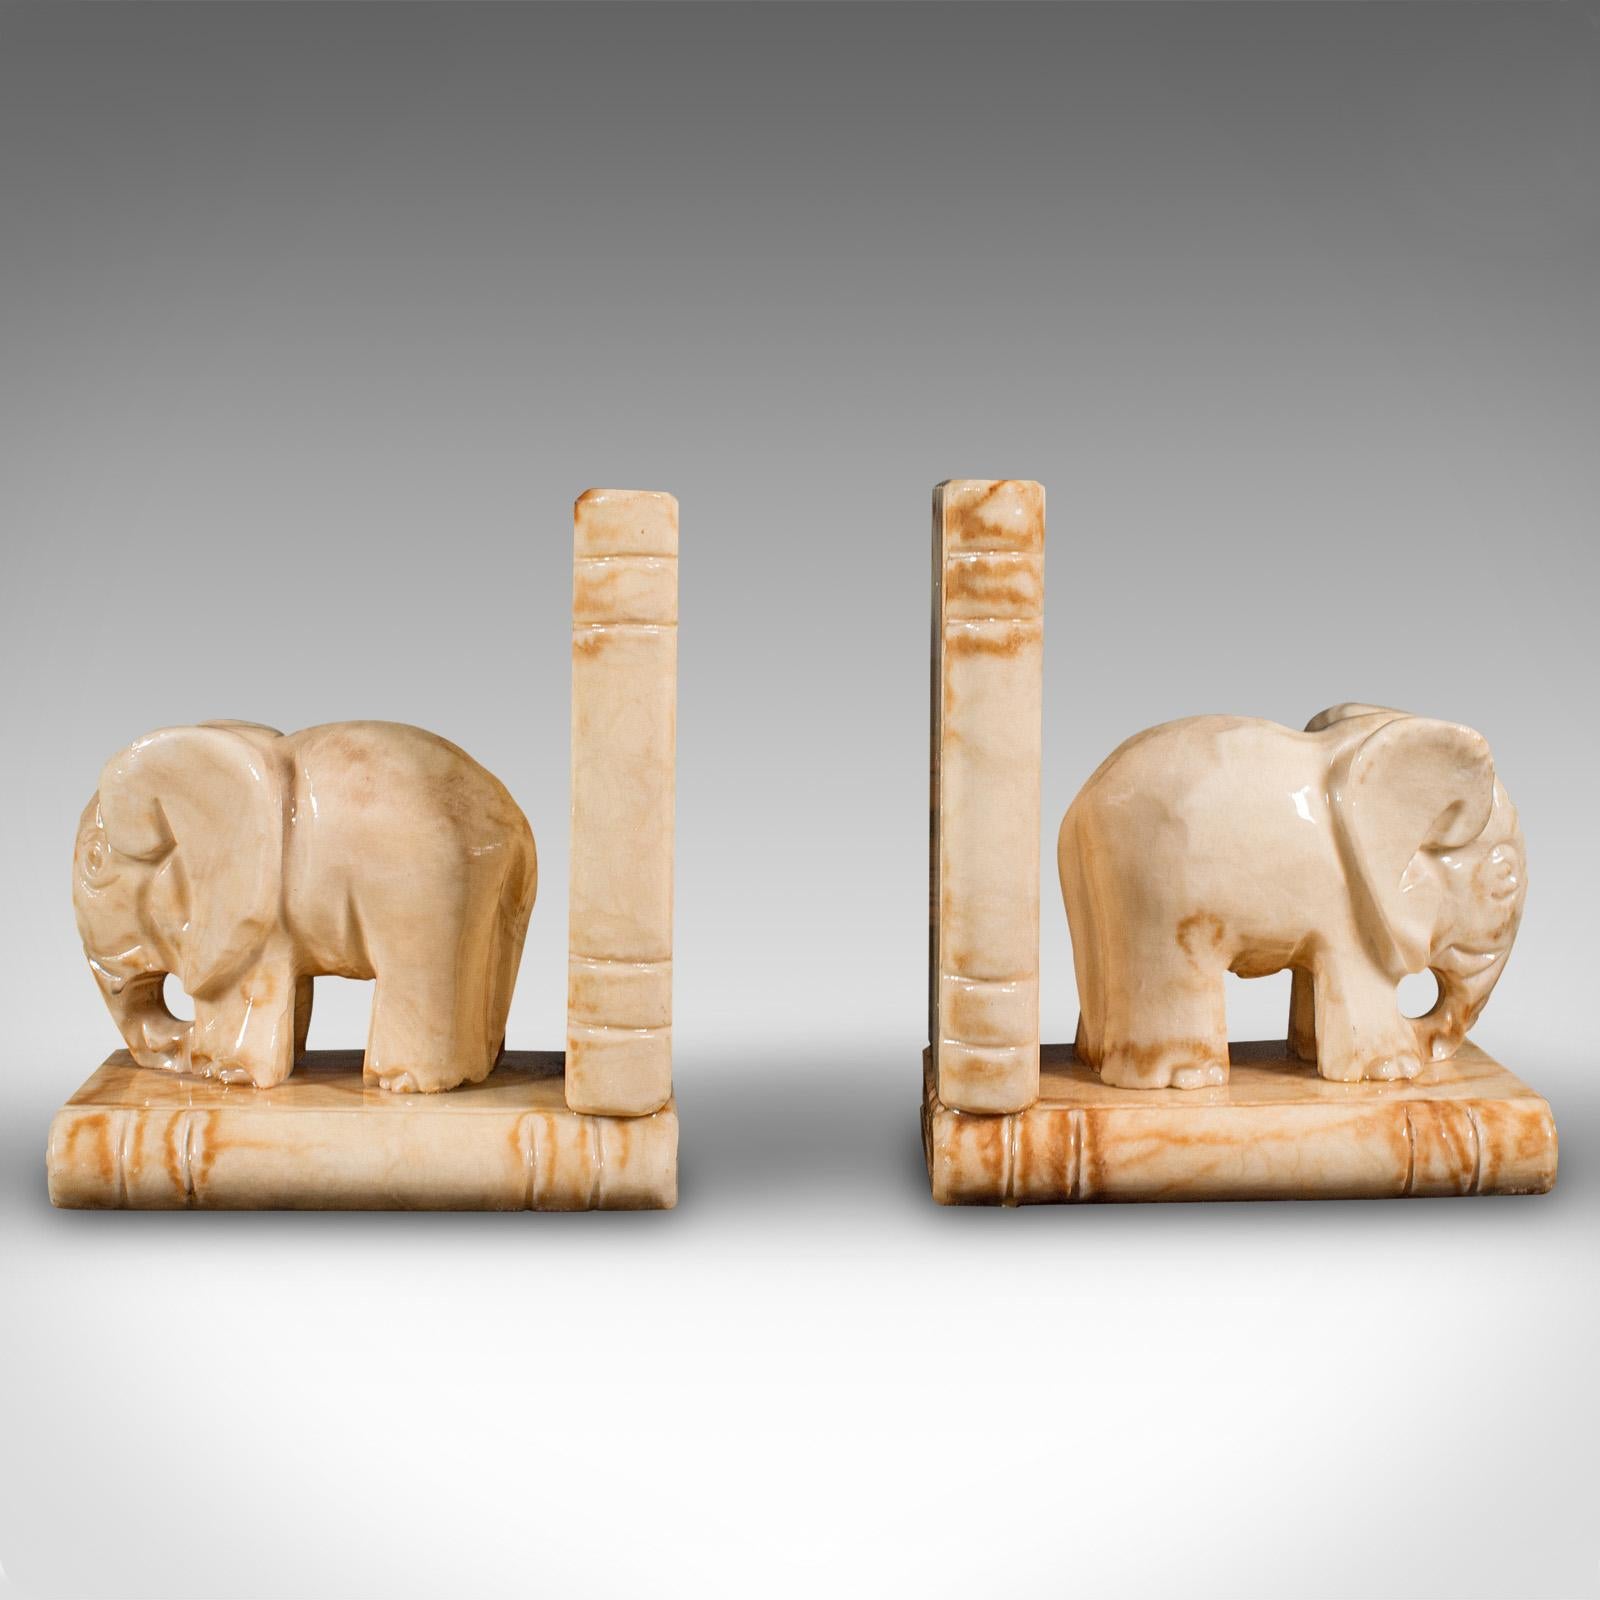 Dies ist ein Paar von antiken Elefanten Buchstützen. Eine dekorative Roman- oder Buchablage aus afrikanischem Milchonyx aus der späten viktorianischen Periode, um 1900.

Großartiger Charakter und Attraktivität des Displays für den begeisterten